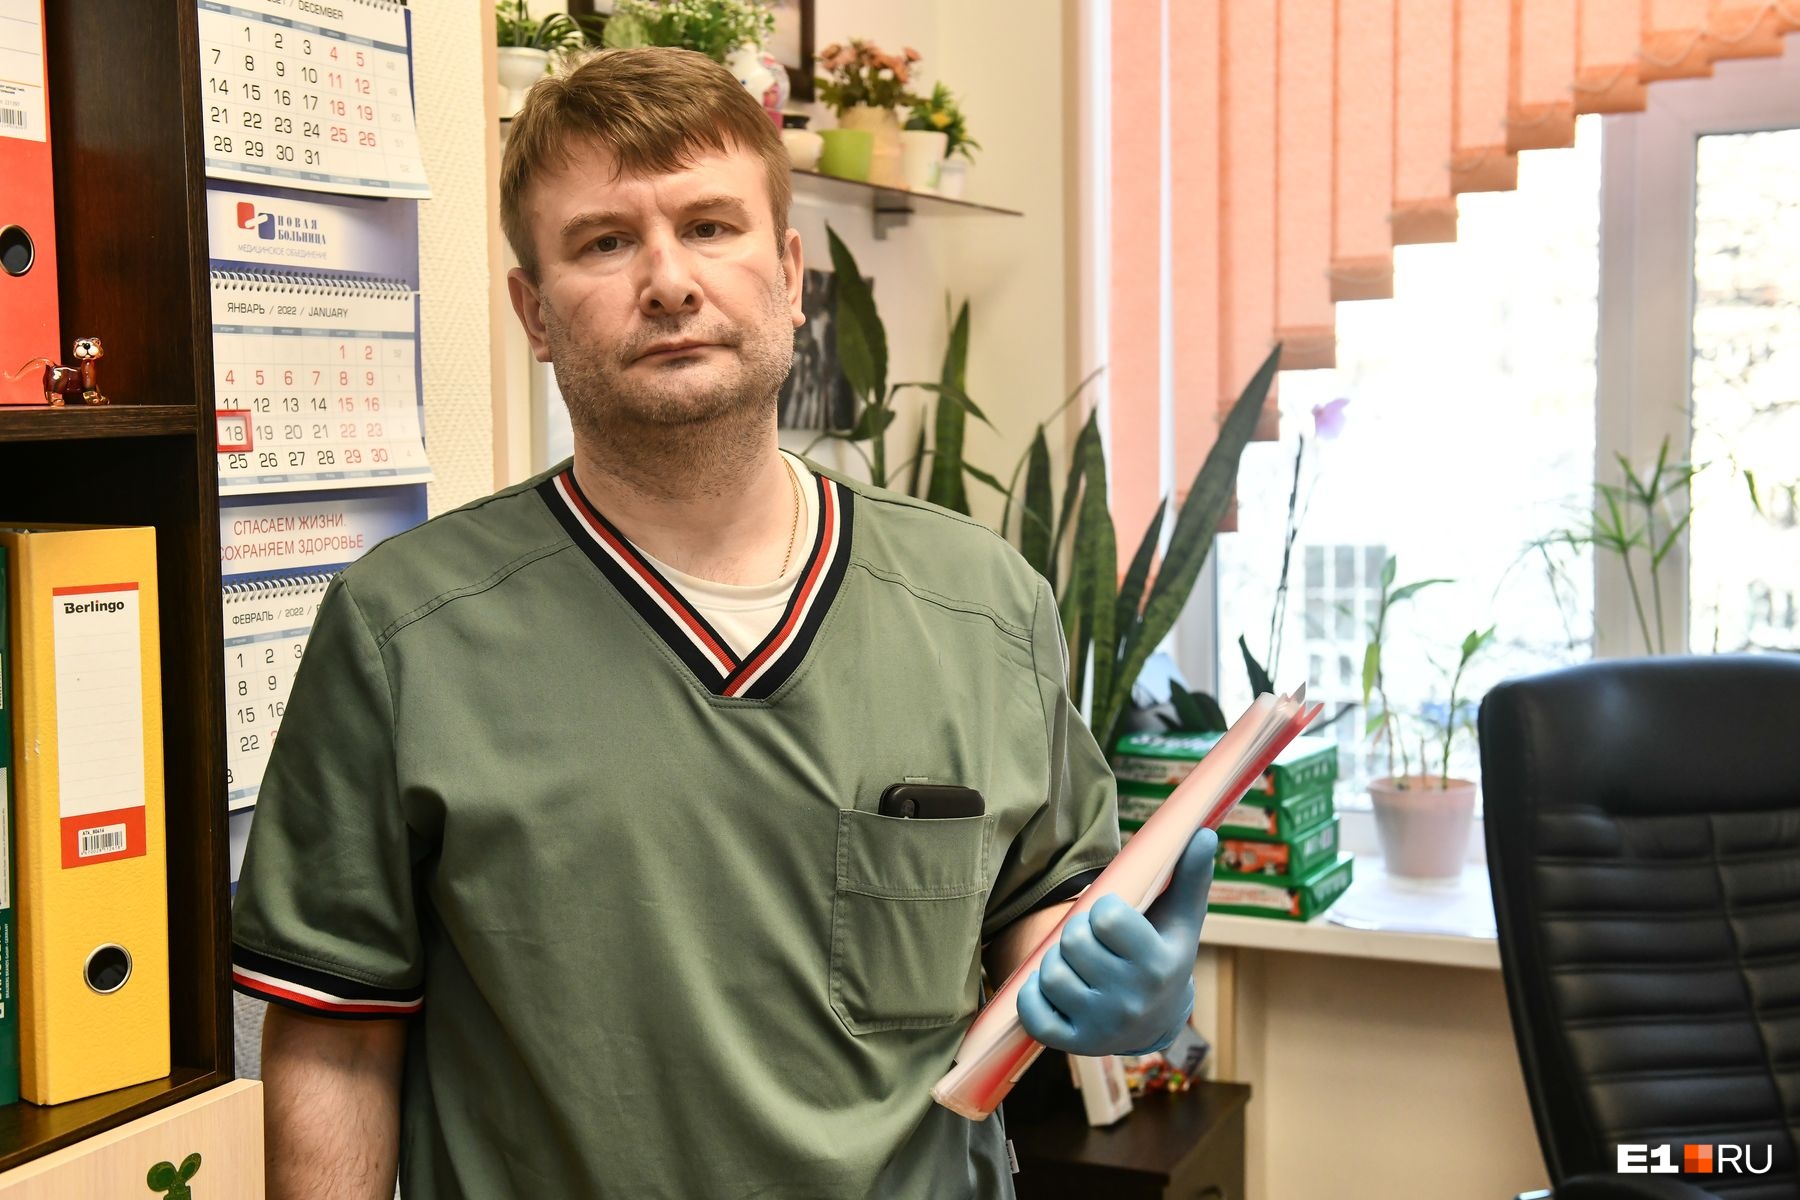 Пульмонолог Алексей Кривоногов составил план лечения пациентки, после чего подключились врачи других специализаций